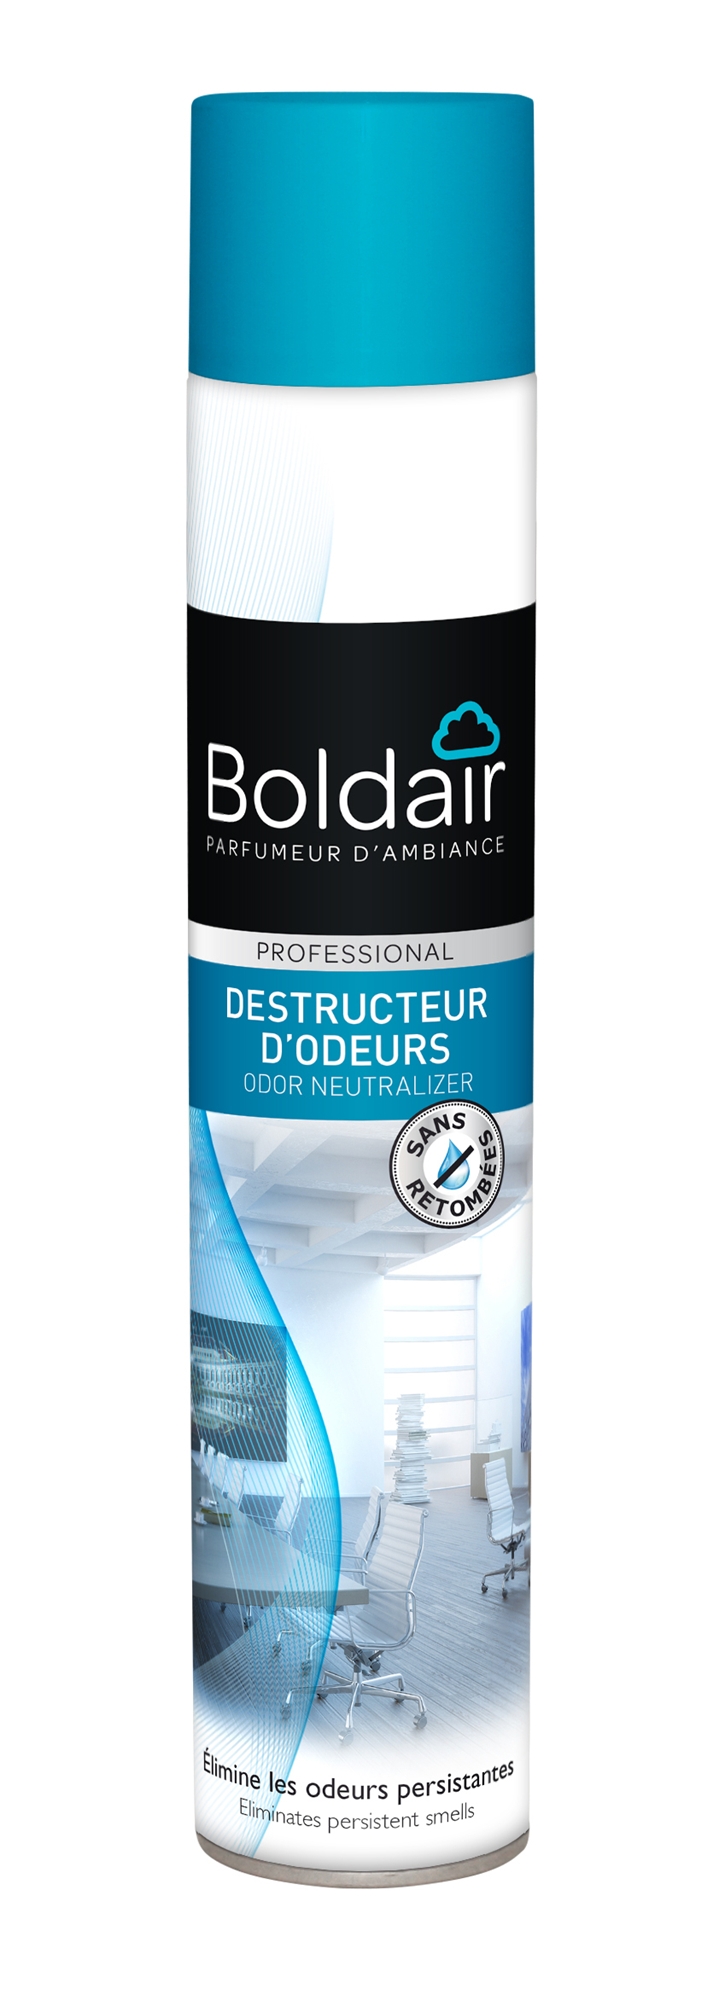 Destructeur d'odeur au cèdre, Boldair dans un magasin sur Toulouse boutiques